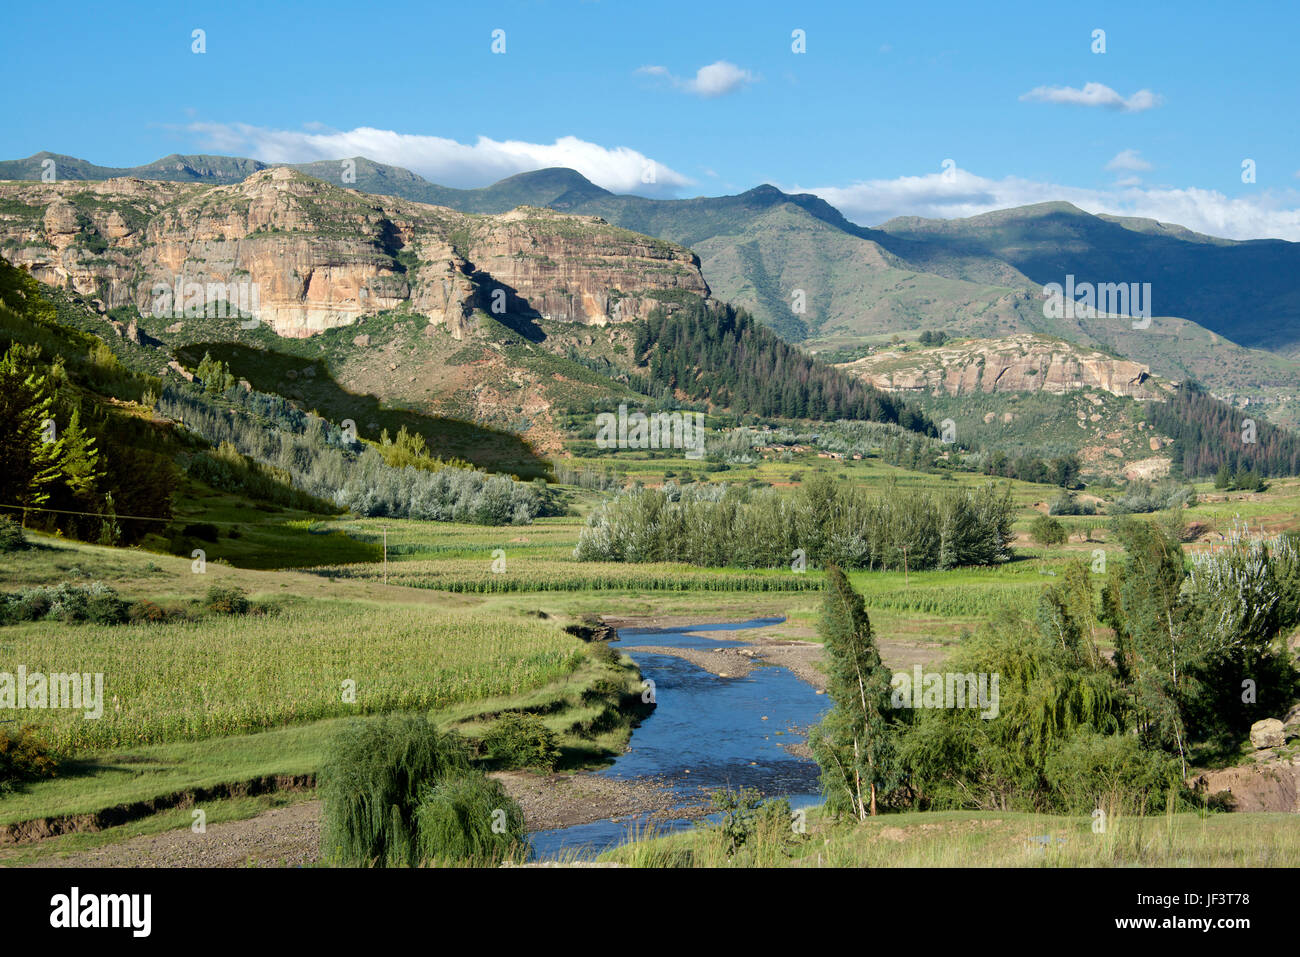 La vallée de la rivière Hlotse fertile paysage du district de Leribe Lesotho Afrique du Sud Banque D'Images